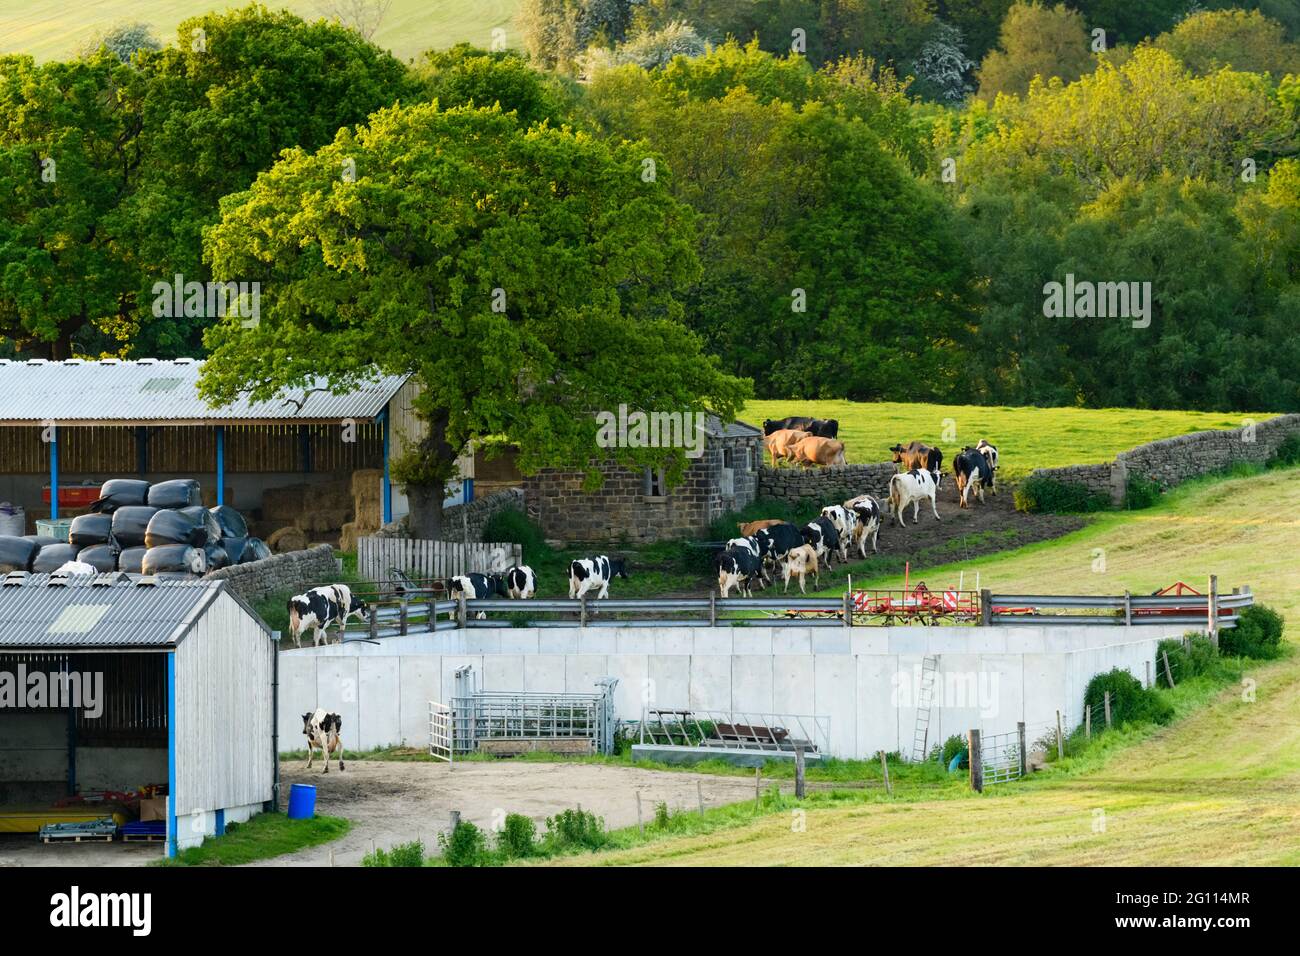 Terreni agricoli, edifici agricoli e mucche camminando in una linea oltre il fienile, tornando al pascolo dopo la mungitura serale - Baildon, West Yorkshire, Inghilterra, Regno Unito. Foto Stock